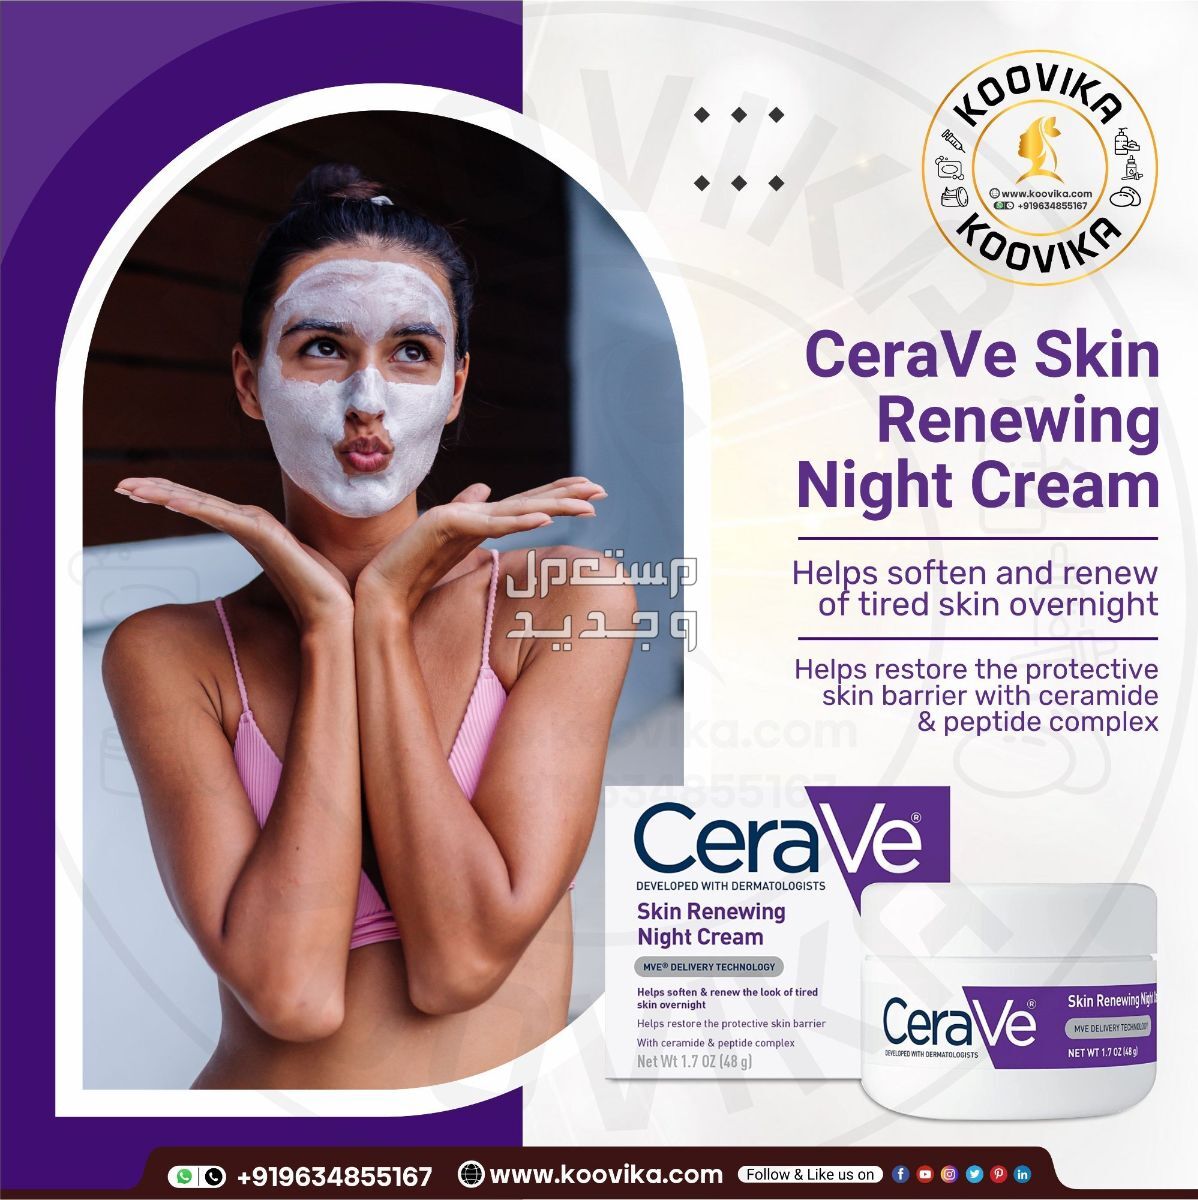 أفضل كريم ليلي للعناية بالبشرة لعام 2023 في فلسطين شكل كريم ليلي من CeraVe Skin Renewing Night Cream على البشرة